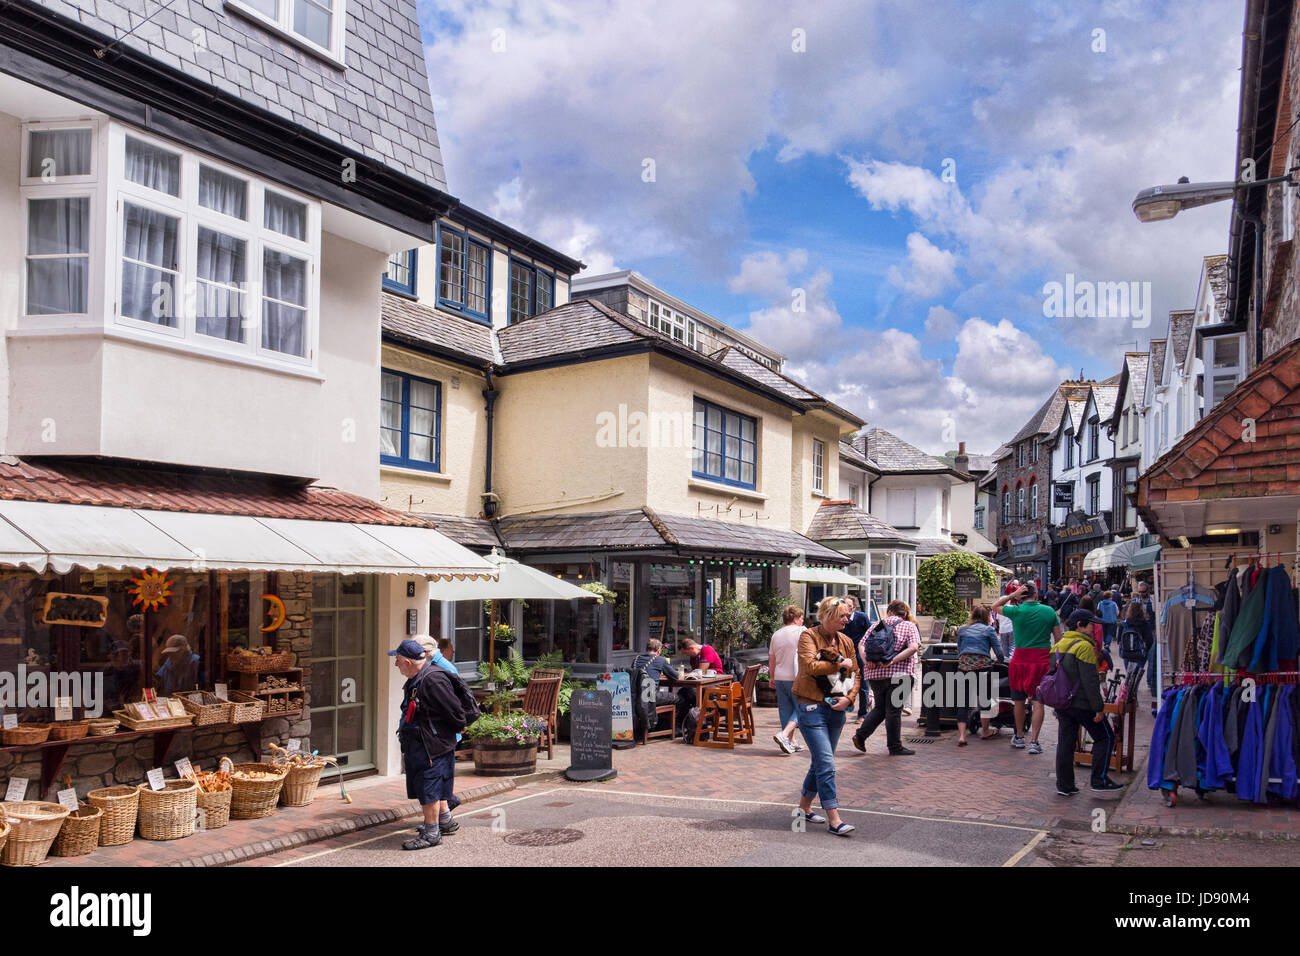 12 Giugno 2017: Lynmouth, Devon, Inghilterra, Regno Unito - Una folla di shopping in busy Lynmouth Street. Foto Stock